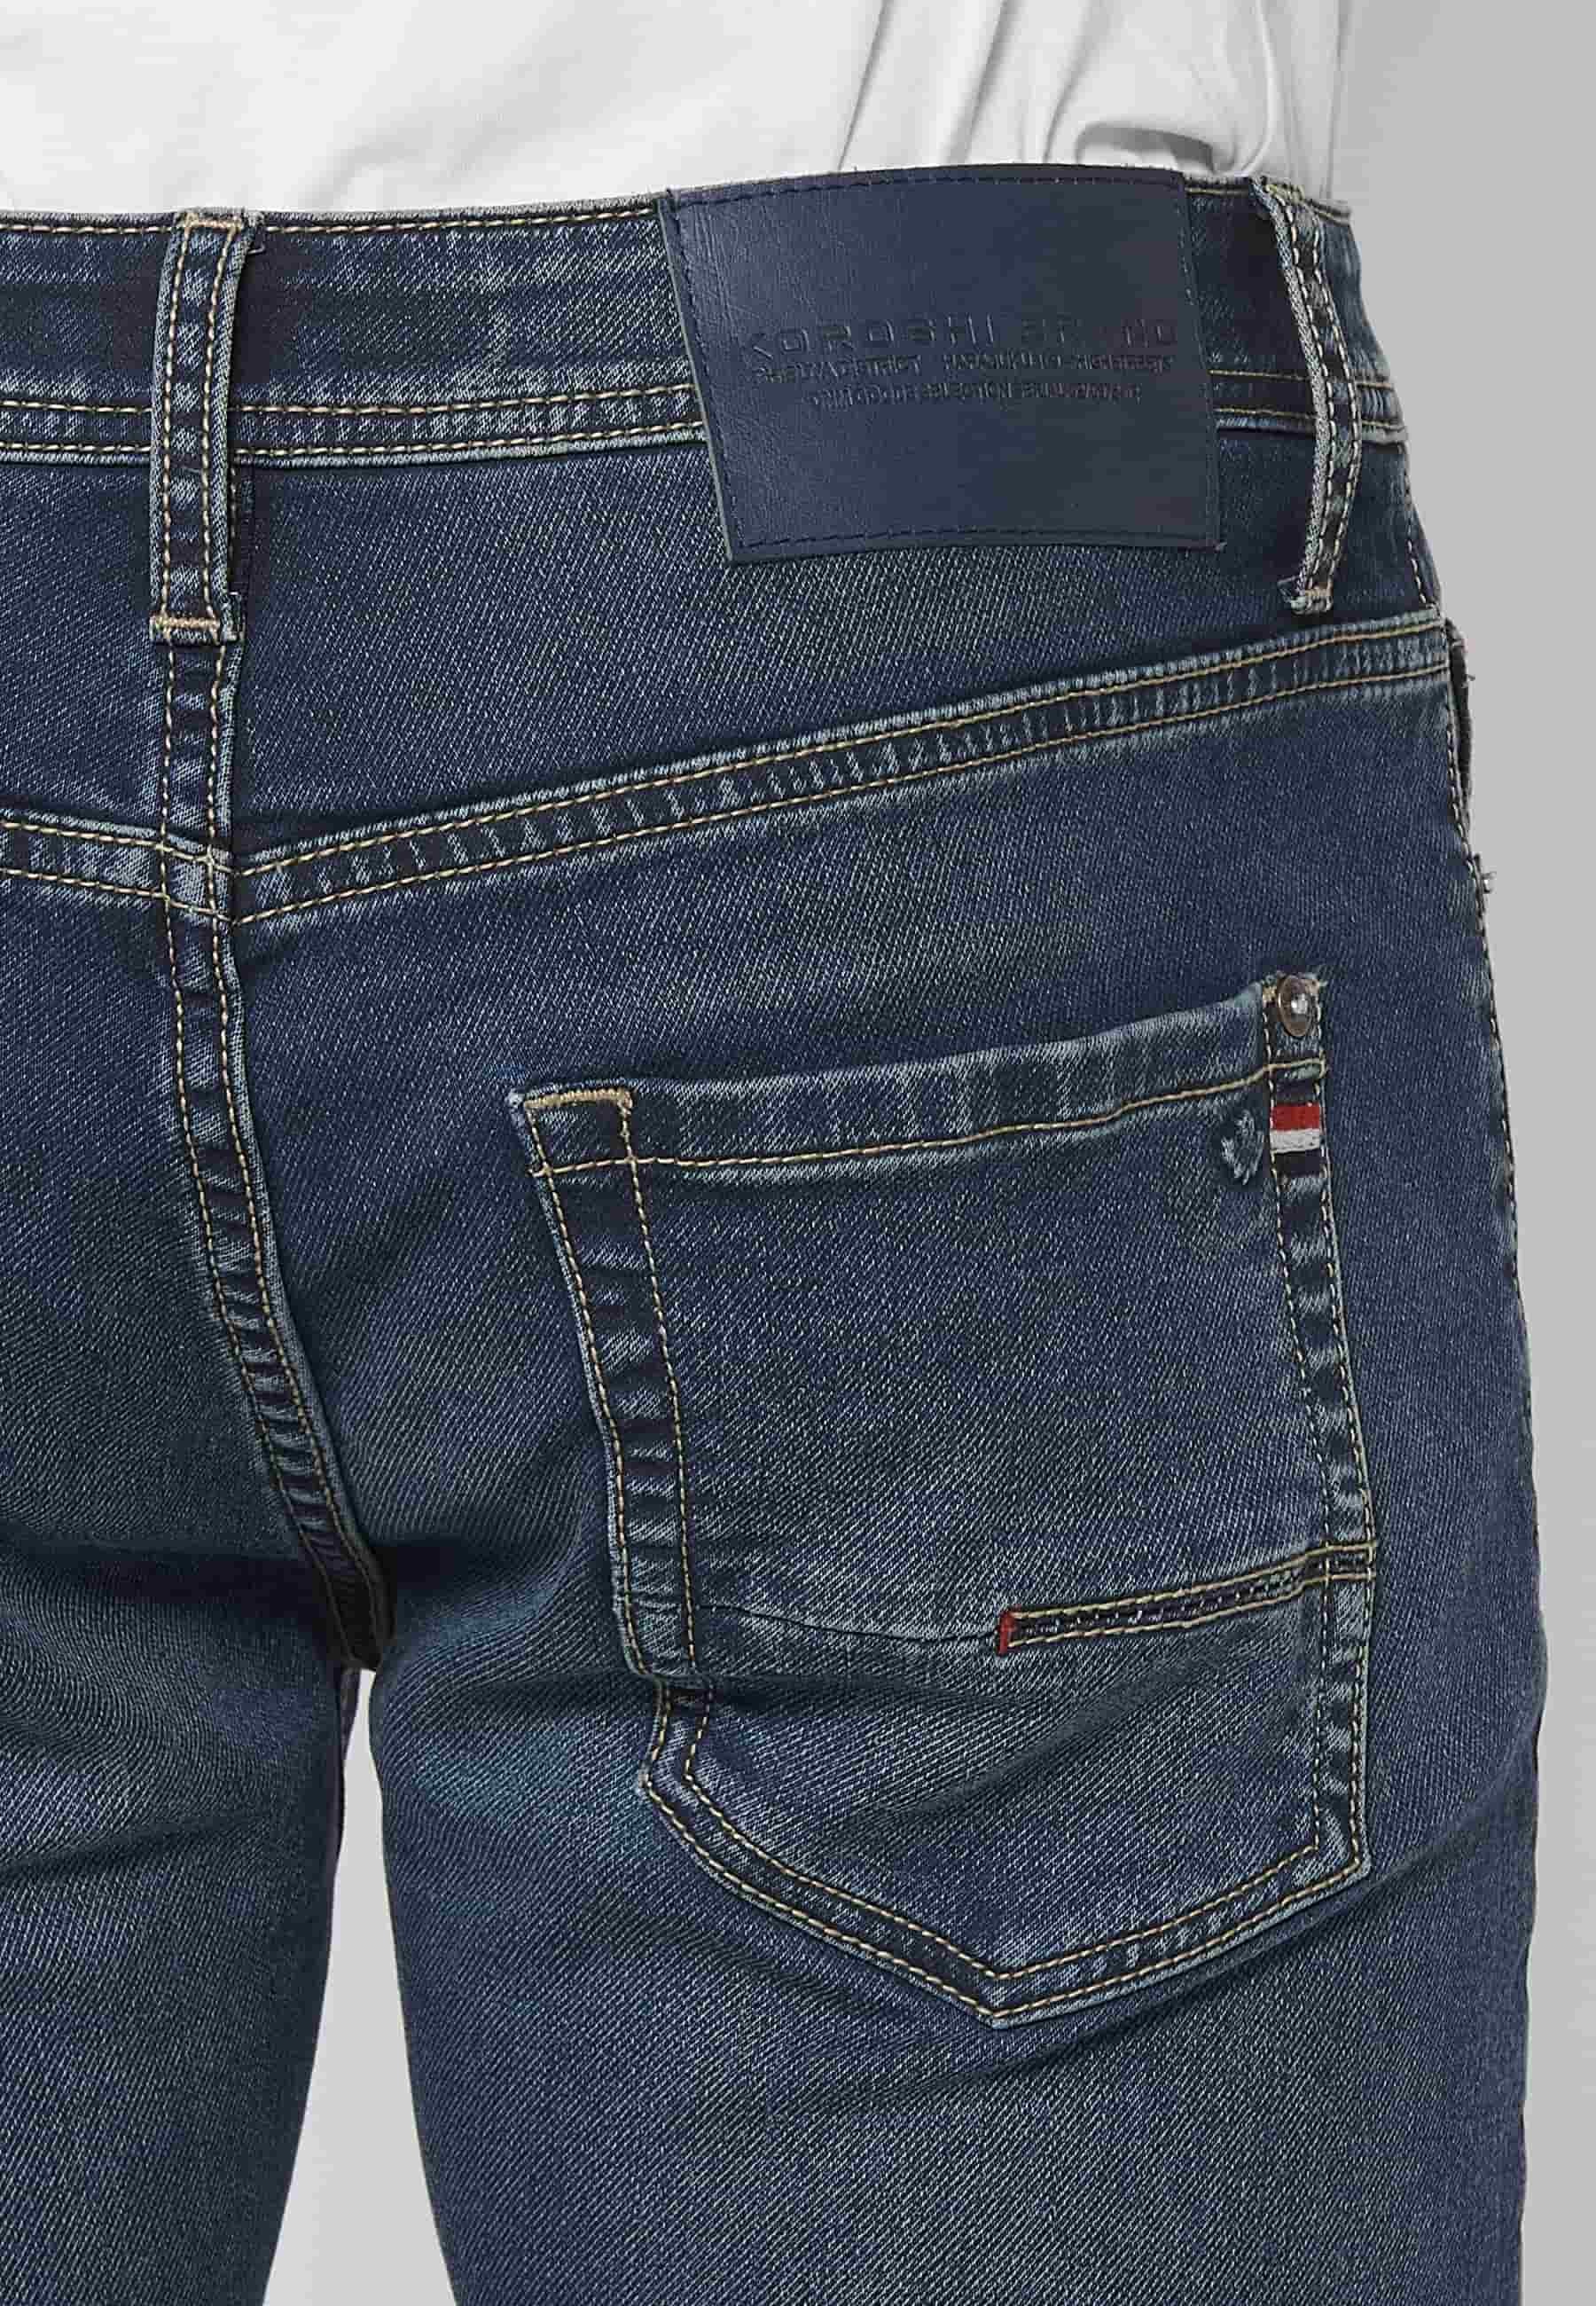 Pantalons llargs Jeans slim fit amb Tancament davanter amb cremallera i botó amb Cinc butxaques, un ceriller de Color Blau per a Home 8